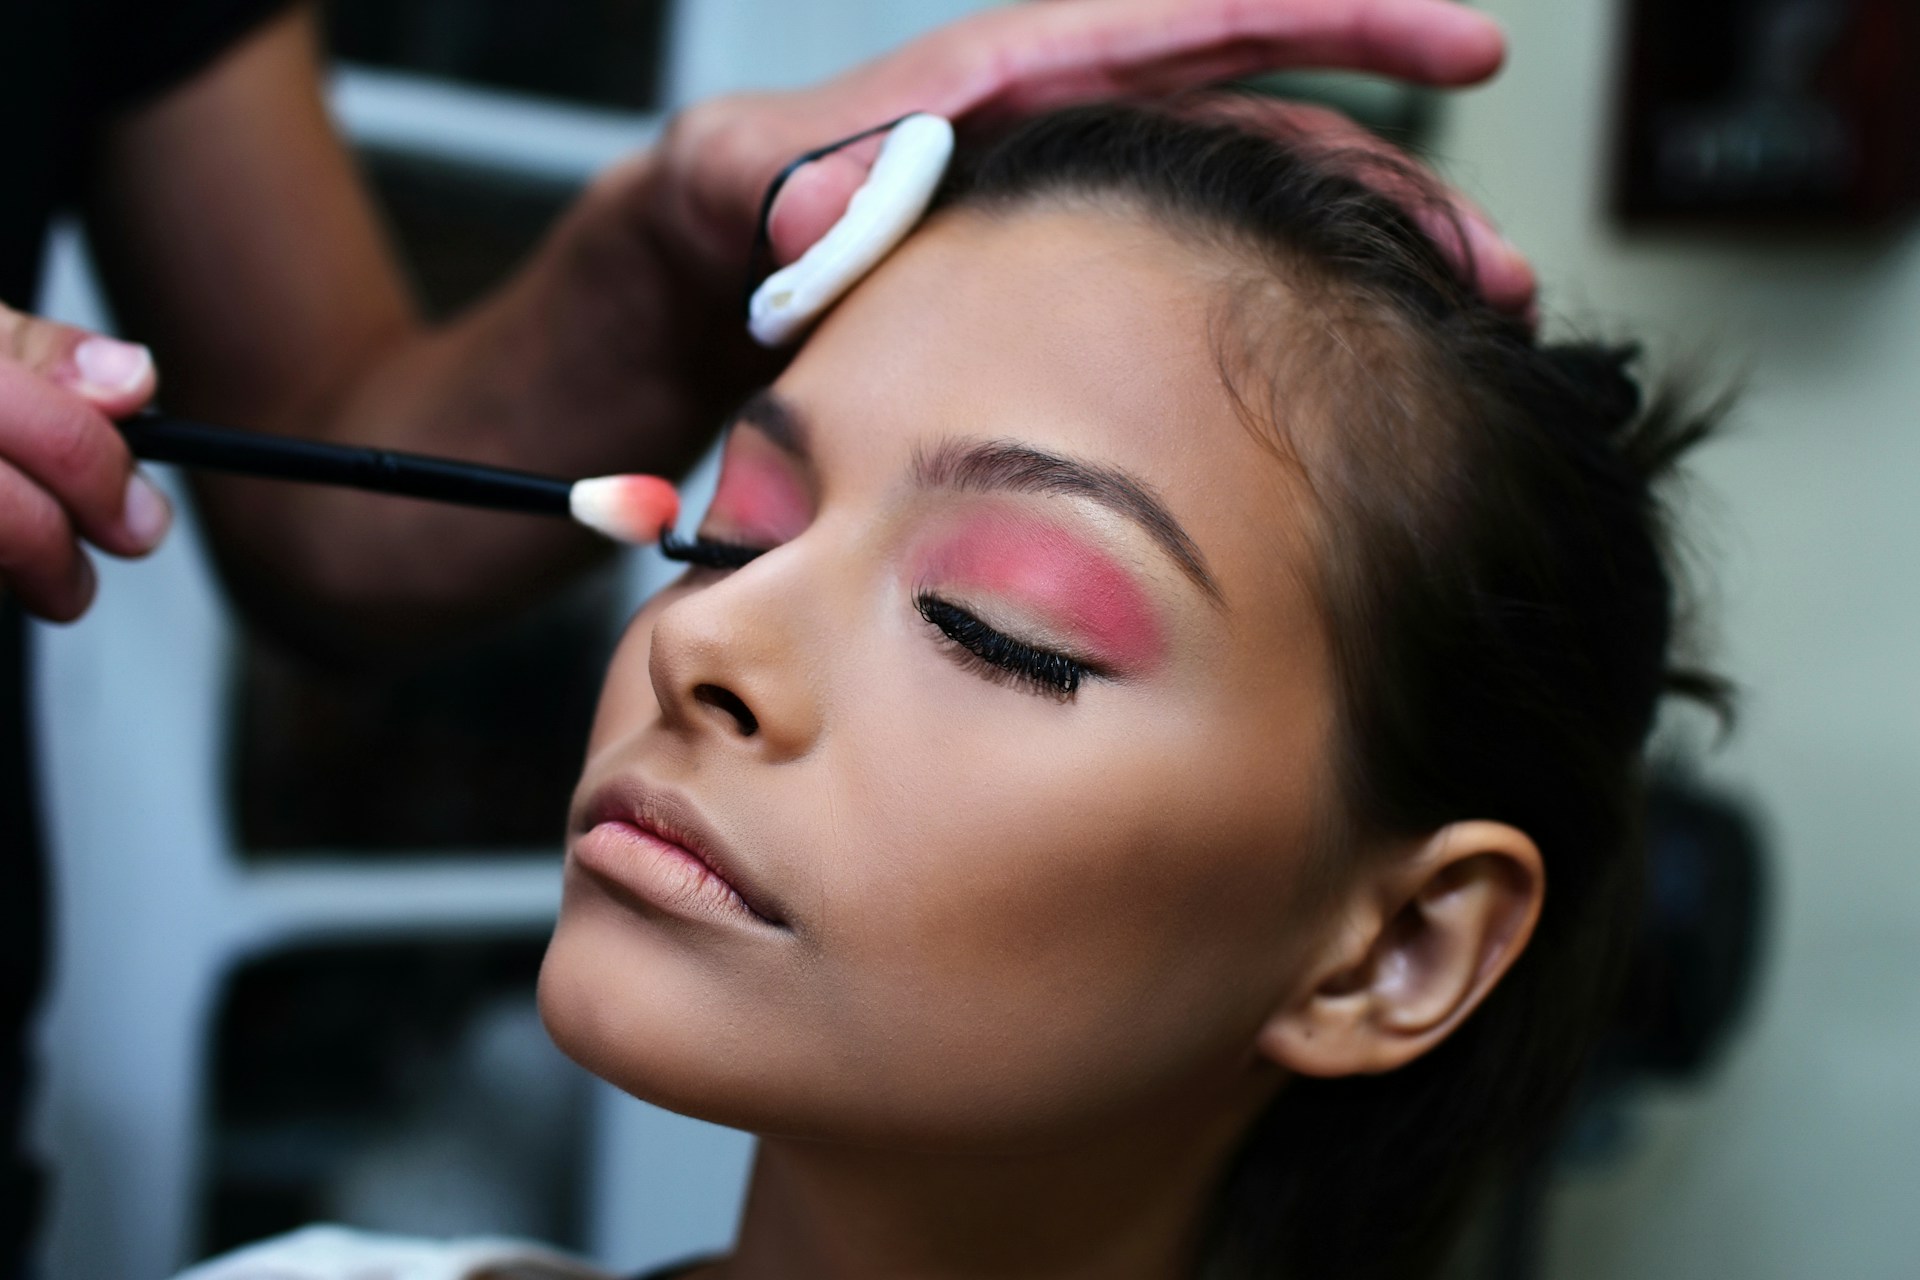 Übermäßiges Make-up und Microblading im Berufsleben